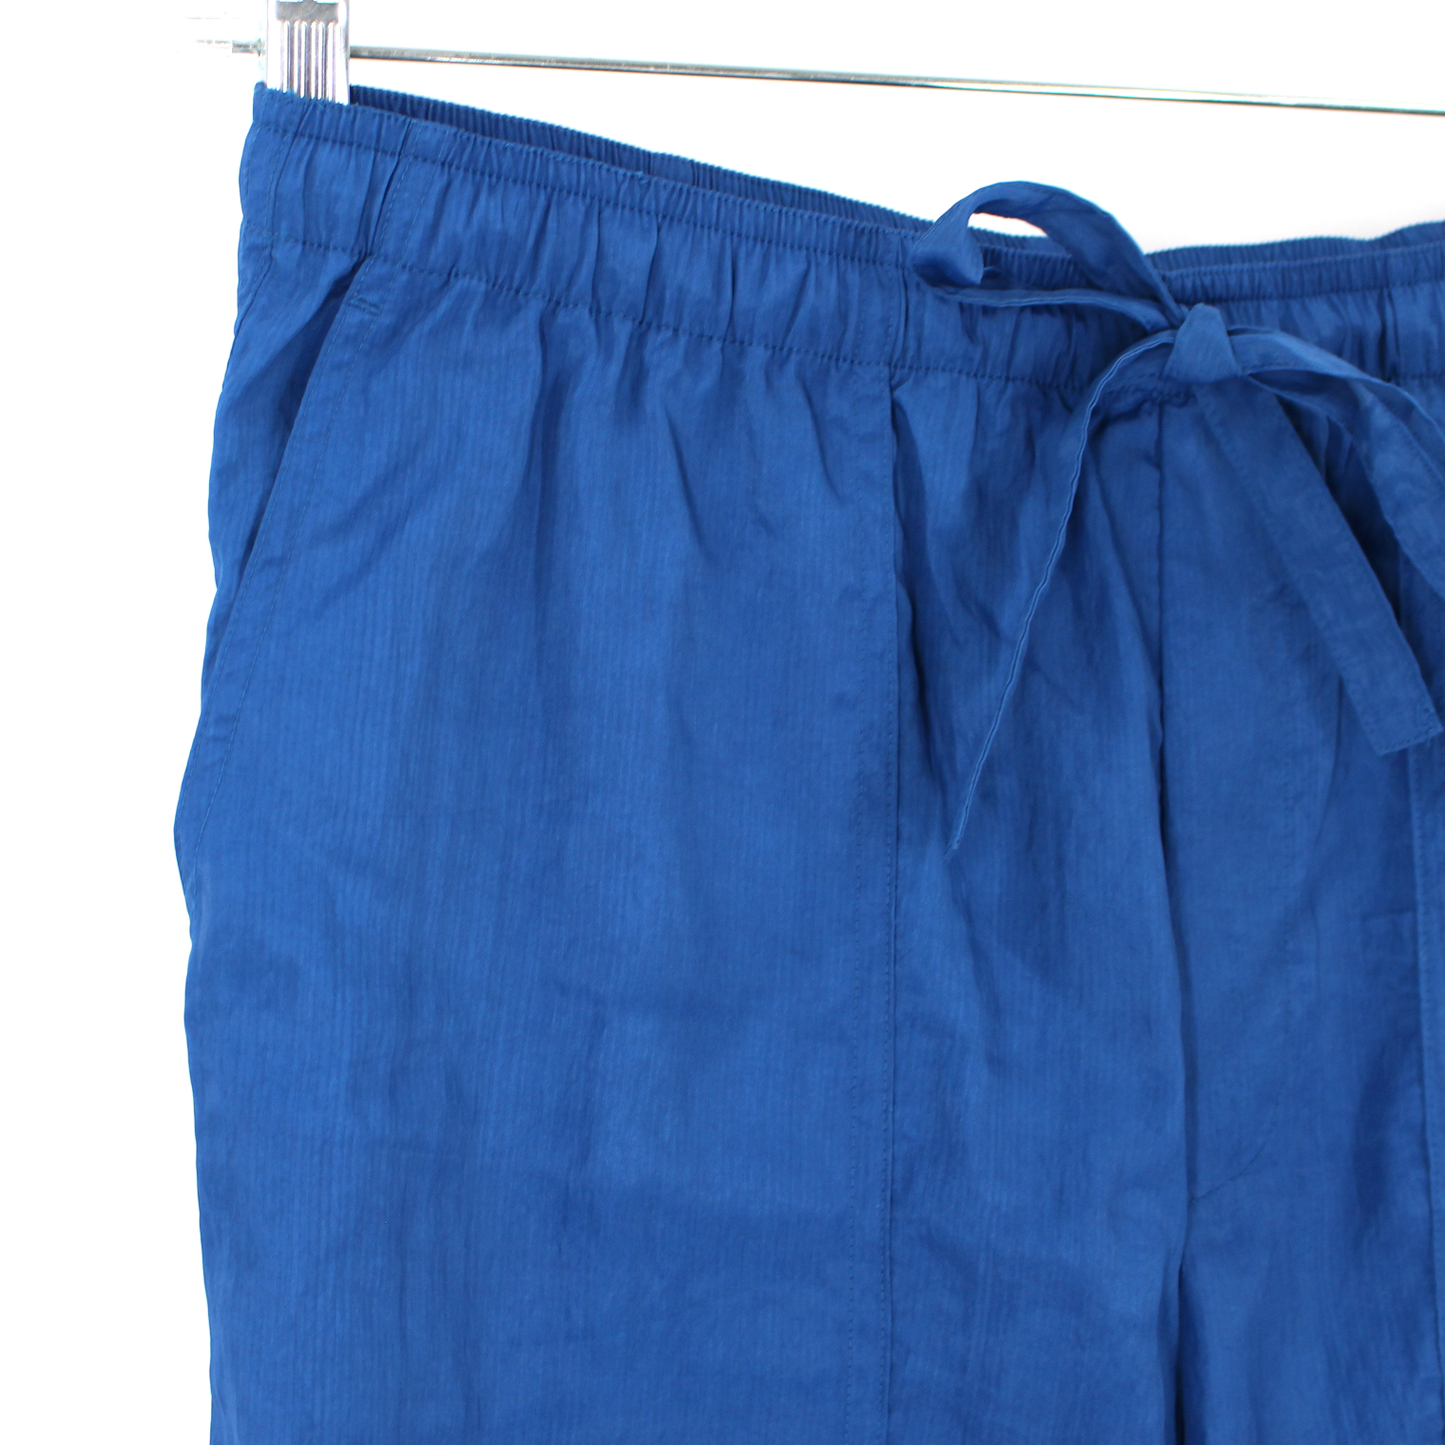 Helmut Lang Blue Parachute Pants